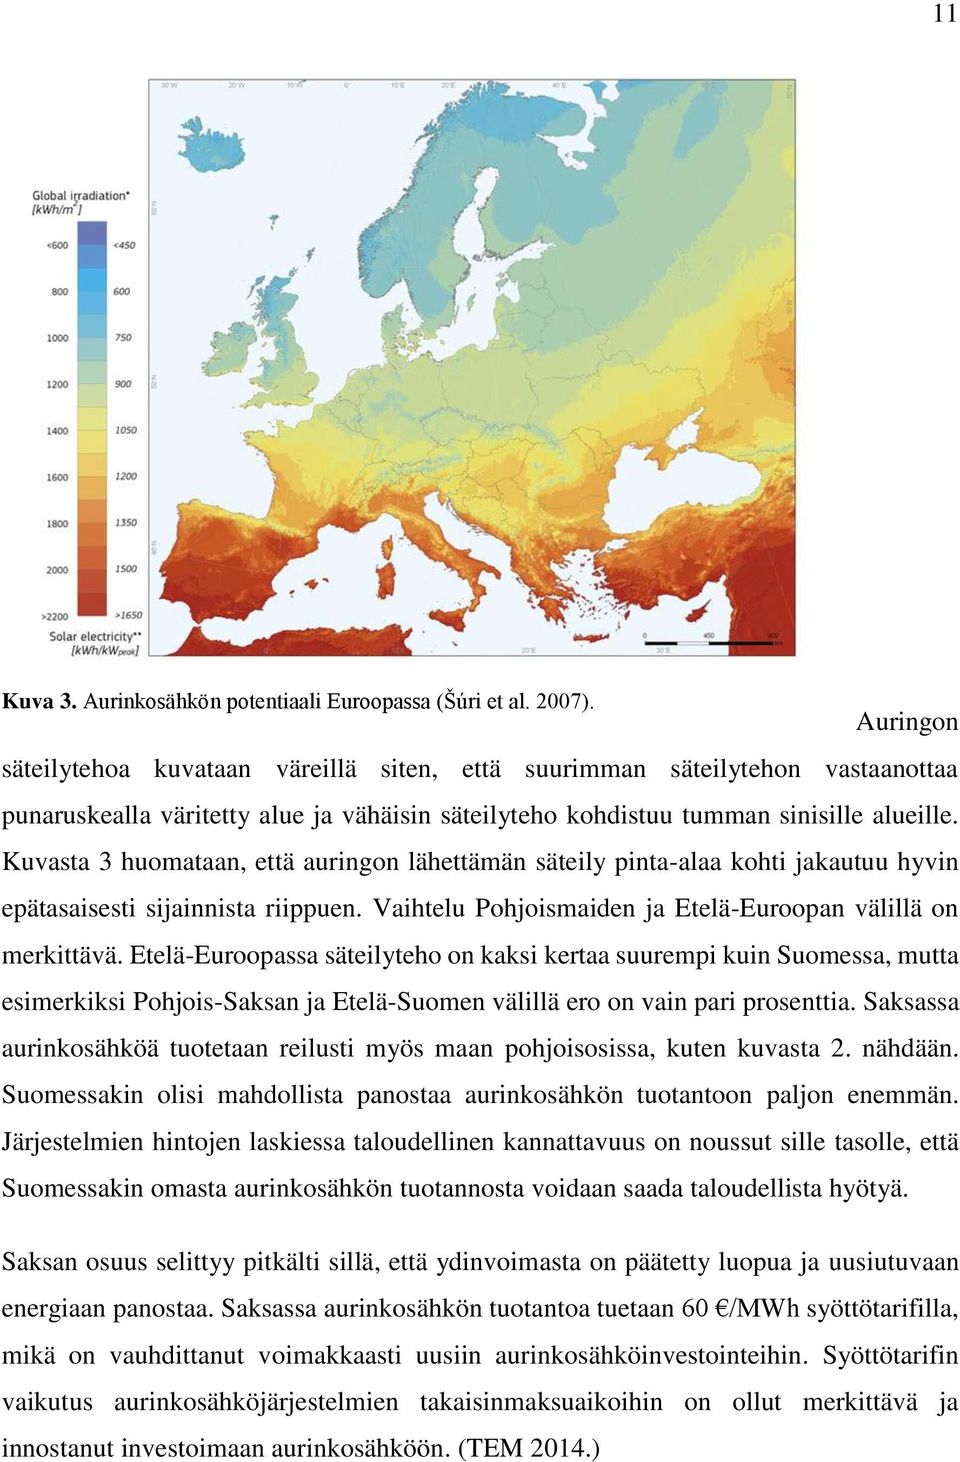 Kuvasta 3 huomataan, että auringon lähettämän säteily pinta-alaa kohti jakautuu hyvin epätasaisesti sijainnista riippuen. Vaihtelu Pohjoismaiden ja Etelä-Euroopan välillä on merkittävä.